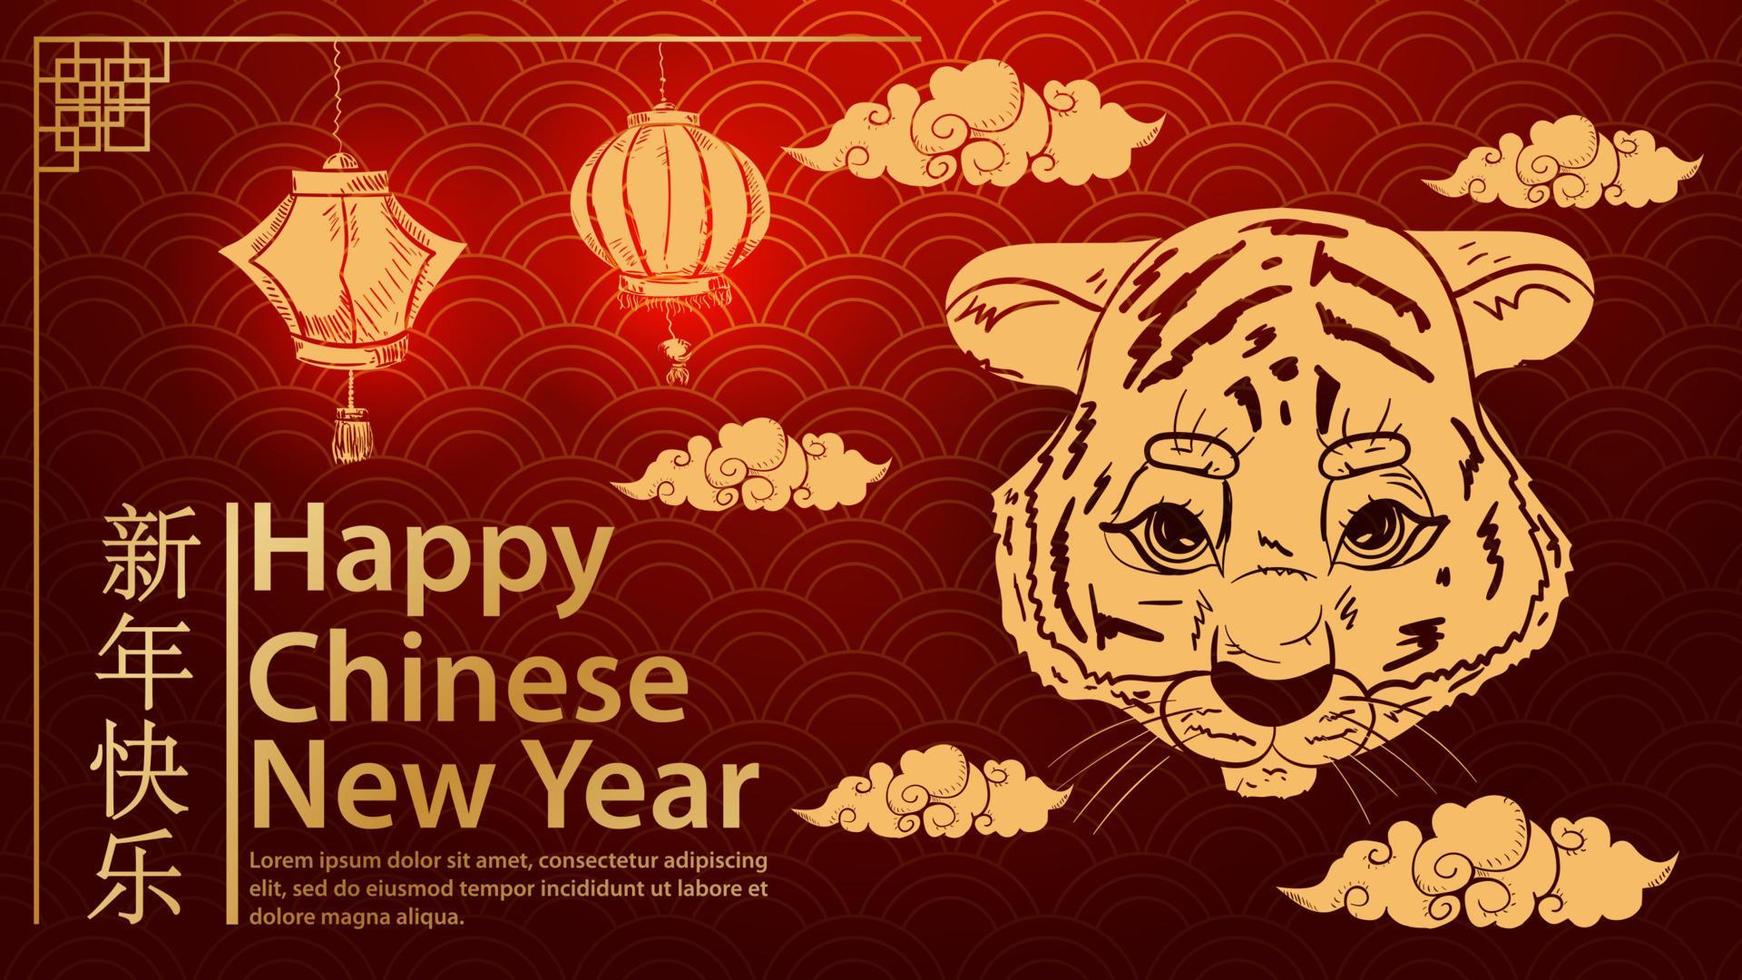 a cabeça de um pequeno filhote de tigre entre as nuvens é um símbolo do ano novo chinês e a inscrição parabéns onda de fundo vermelho vetor